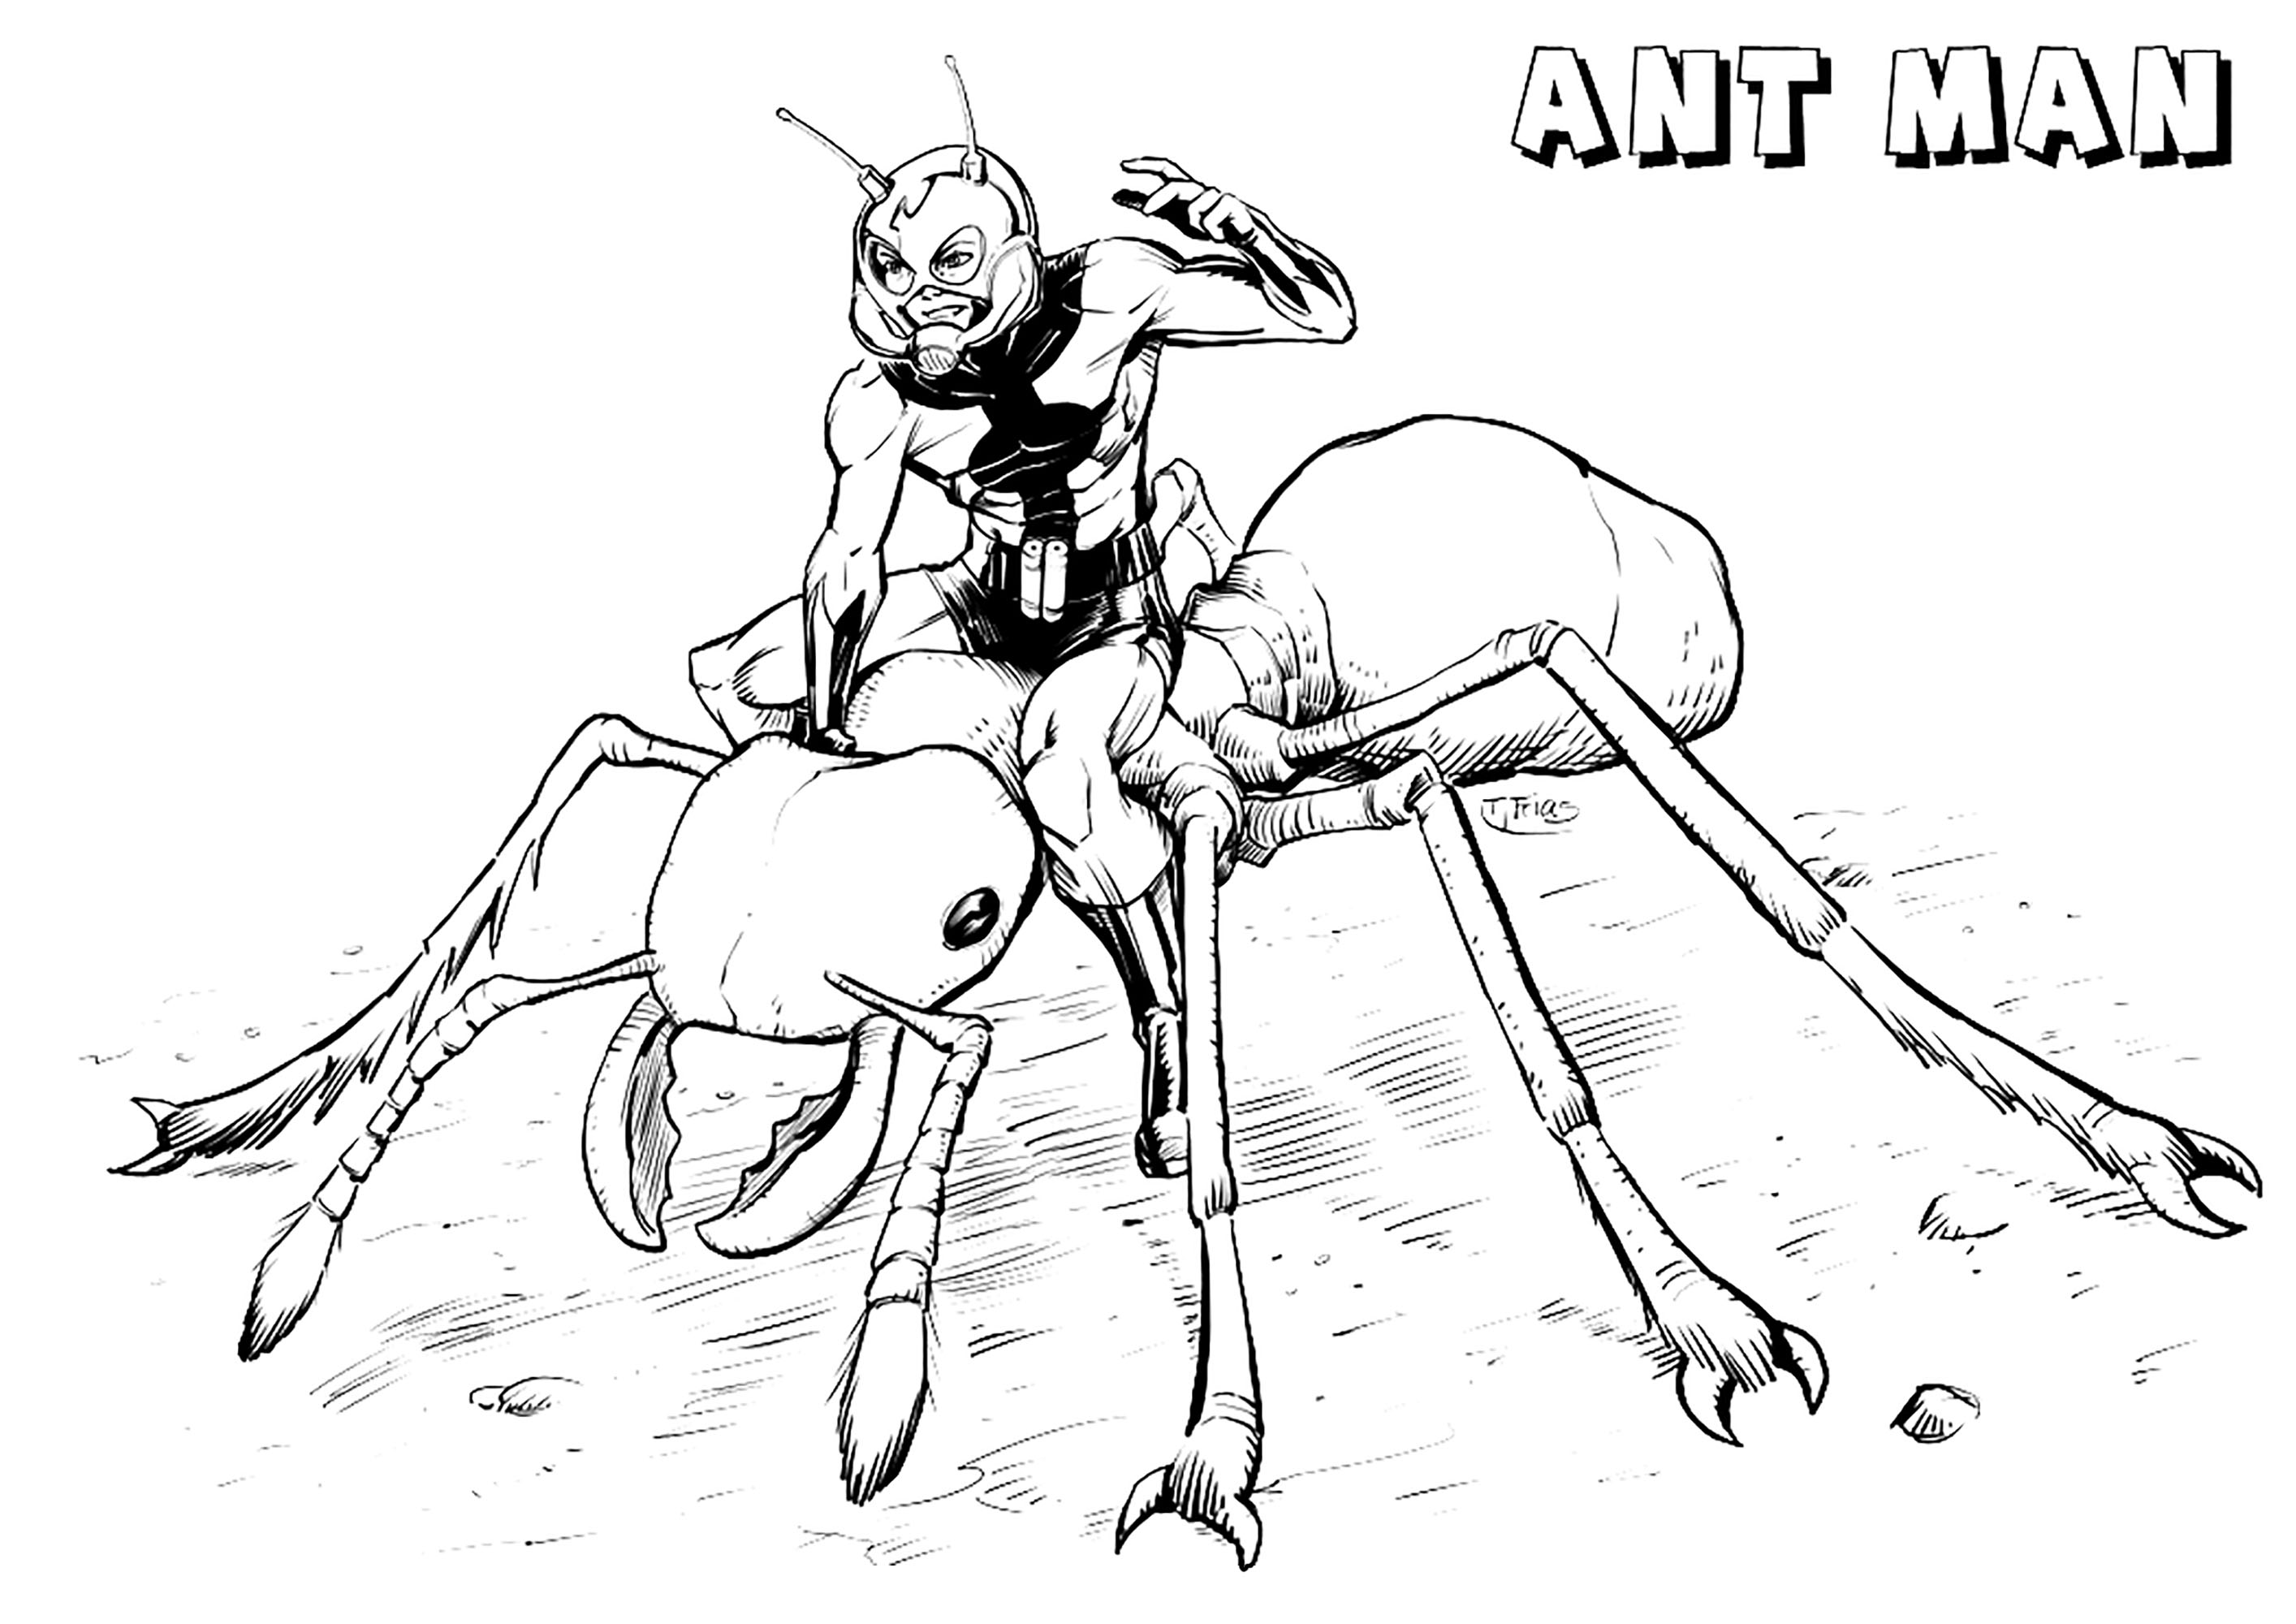 Incroyable coloriage de Ant-man pour enfants